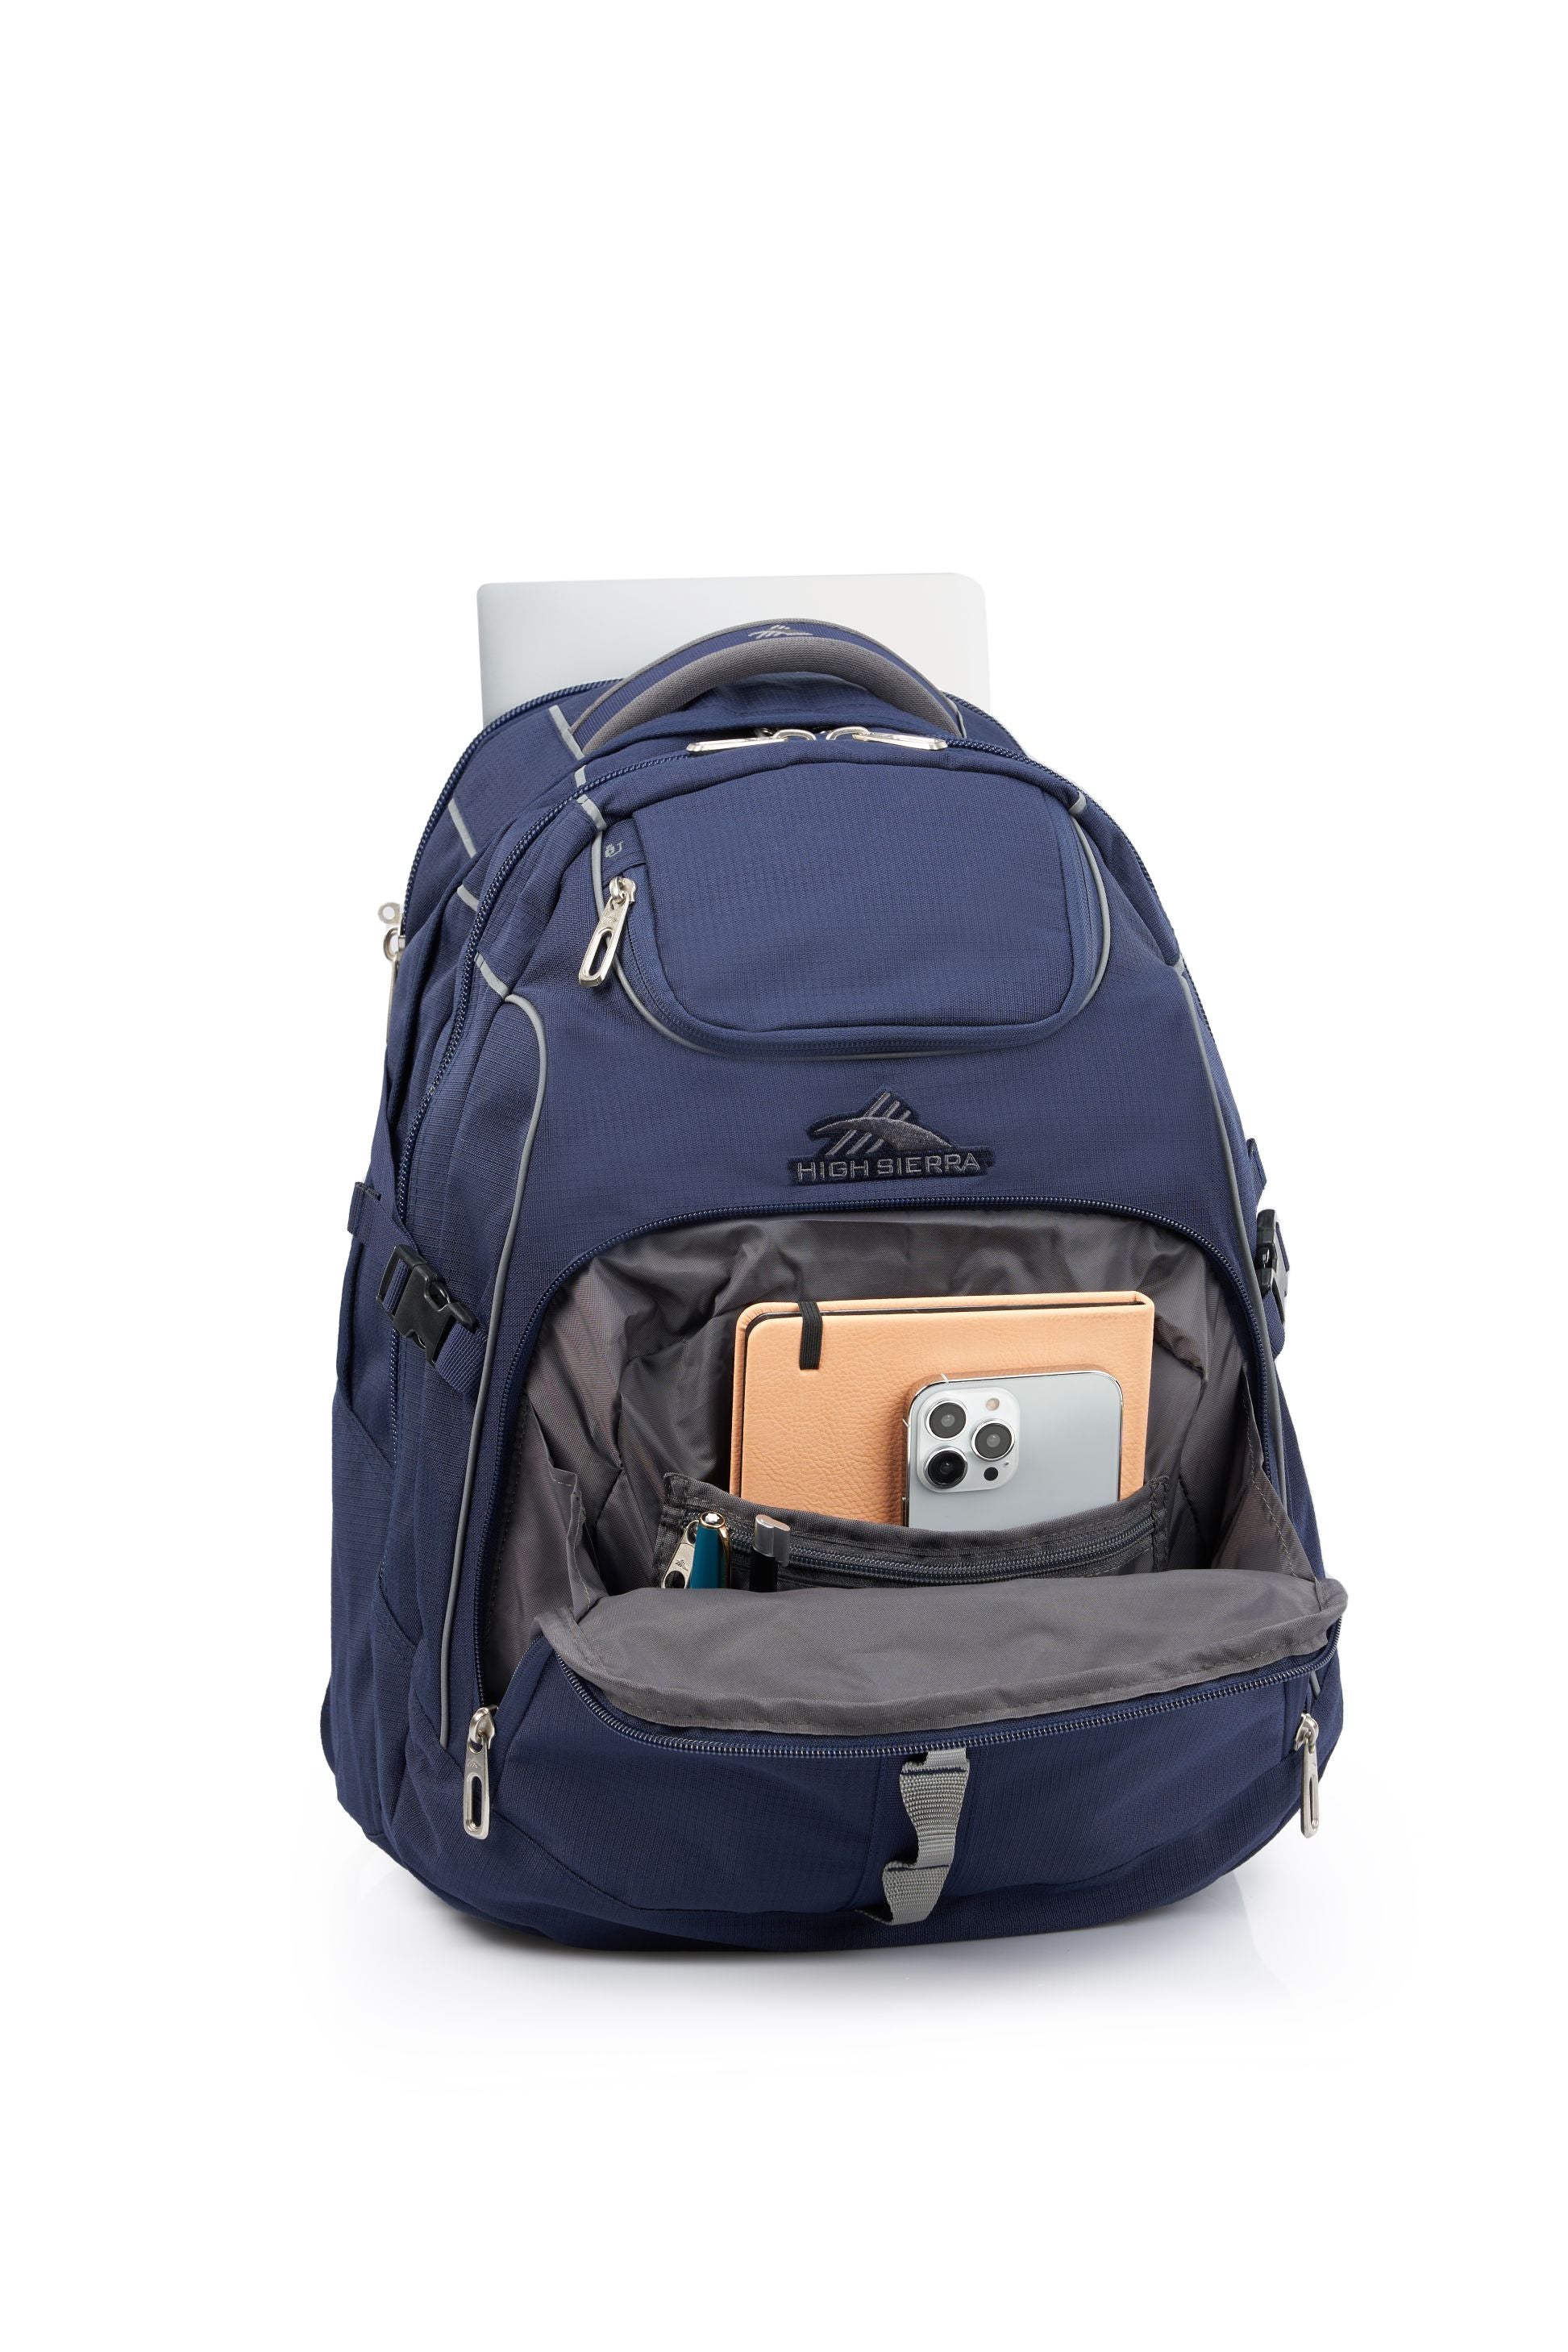 High Sierra - Access 3.0 Eco Backpack - Marine Blue-7